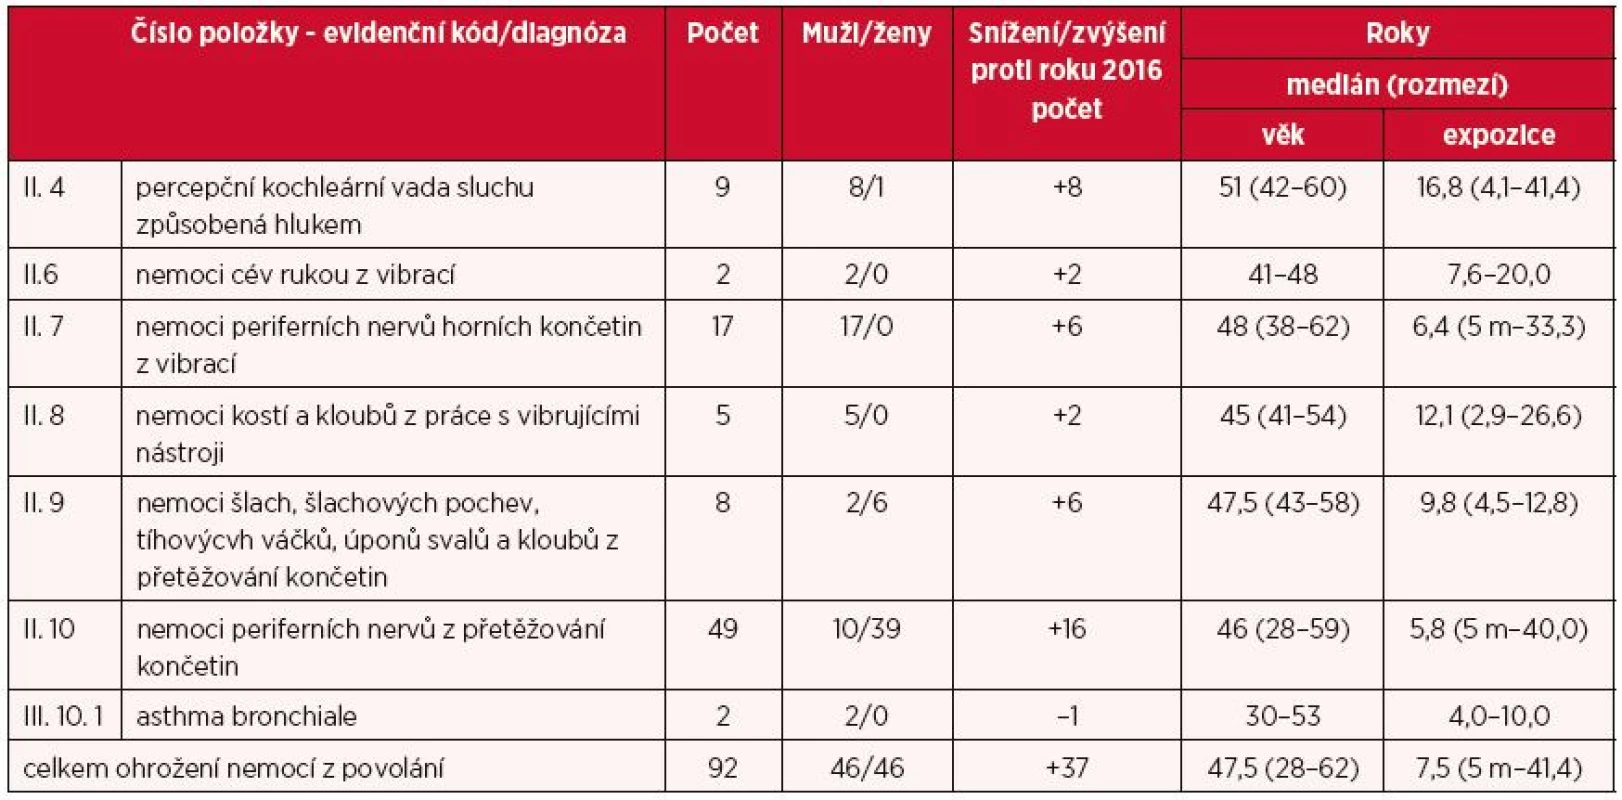 Ohrožení nemocí z povolání hlášená v České republice v roce 2017